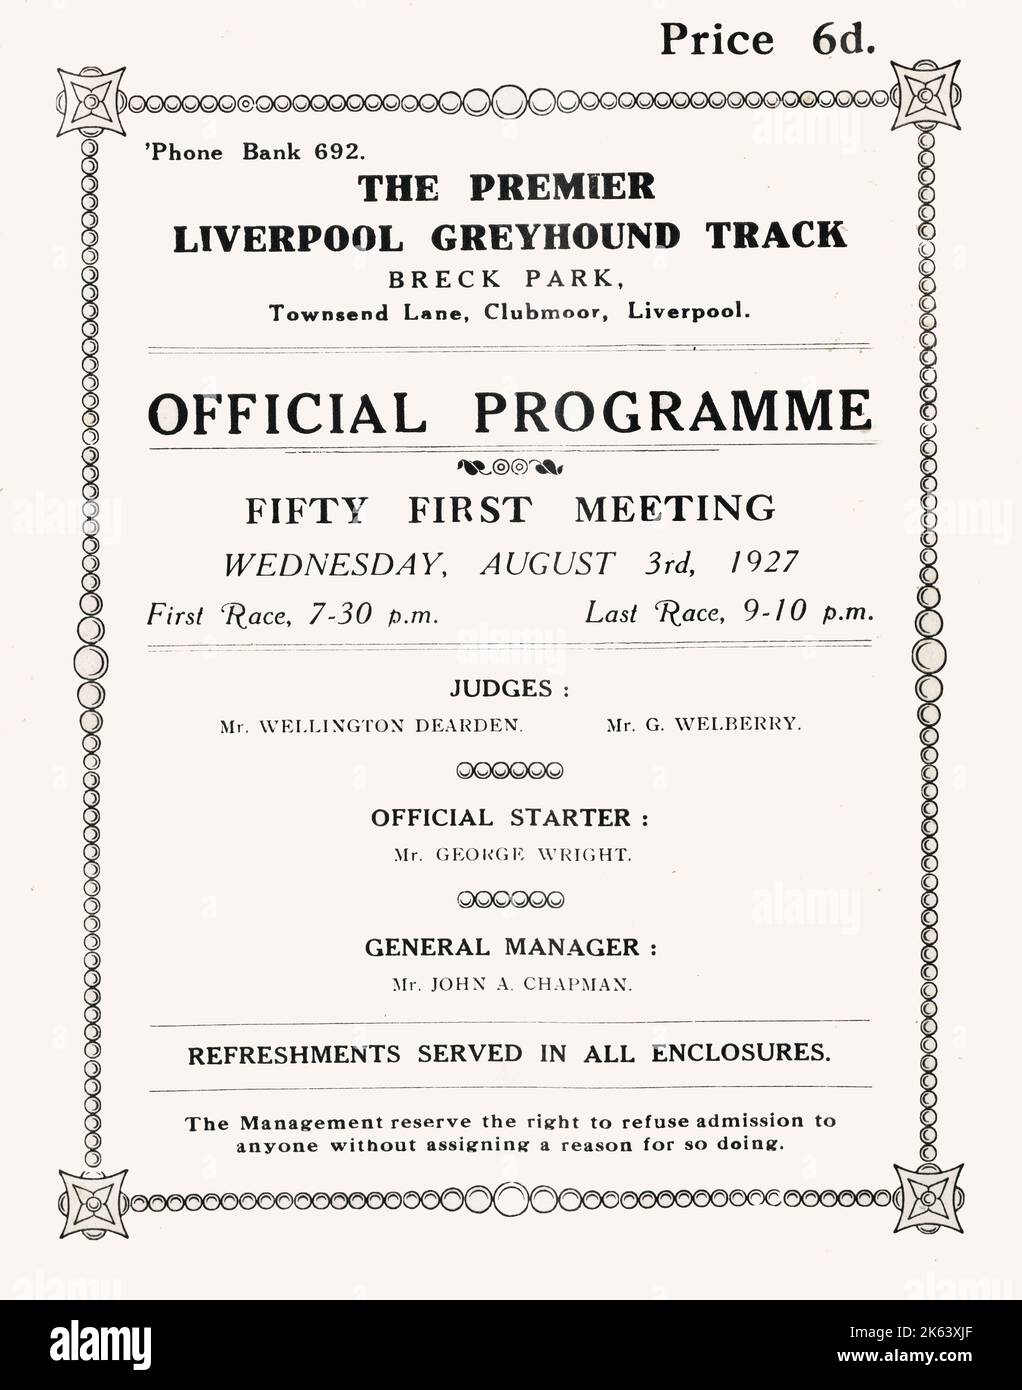 El Premier Liverpool Greyhound Track - Breck Park, Townsend Lane, Clubmoor, Liverpool. La 51ª Reunión el miércoles 3rd de agosto de 1927. Fecha: Alrededor de 1910s Foto de stock